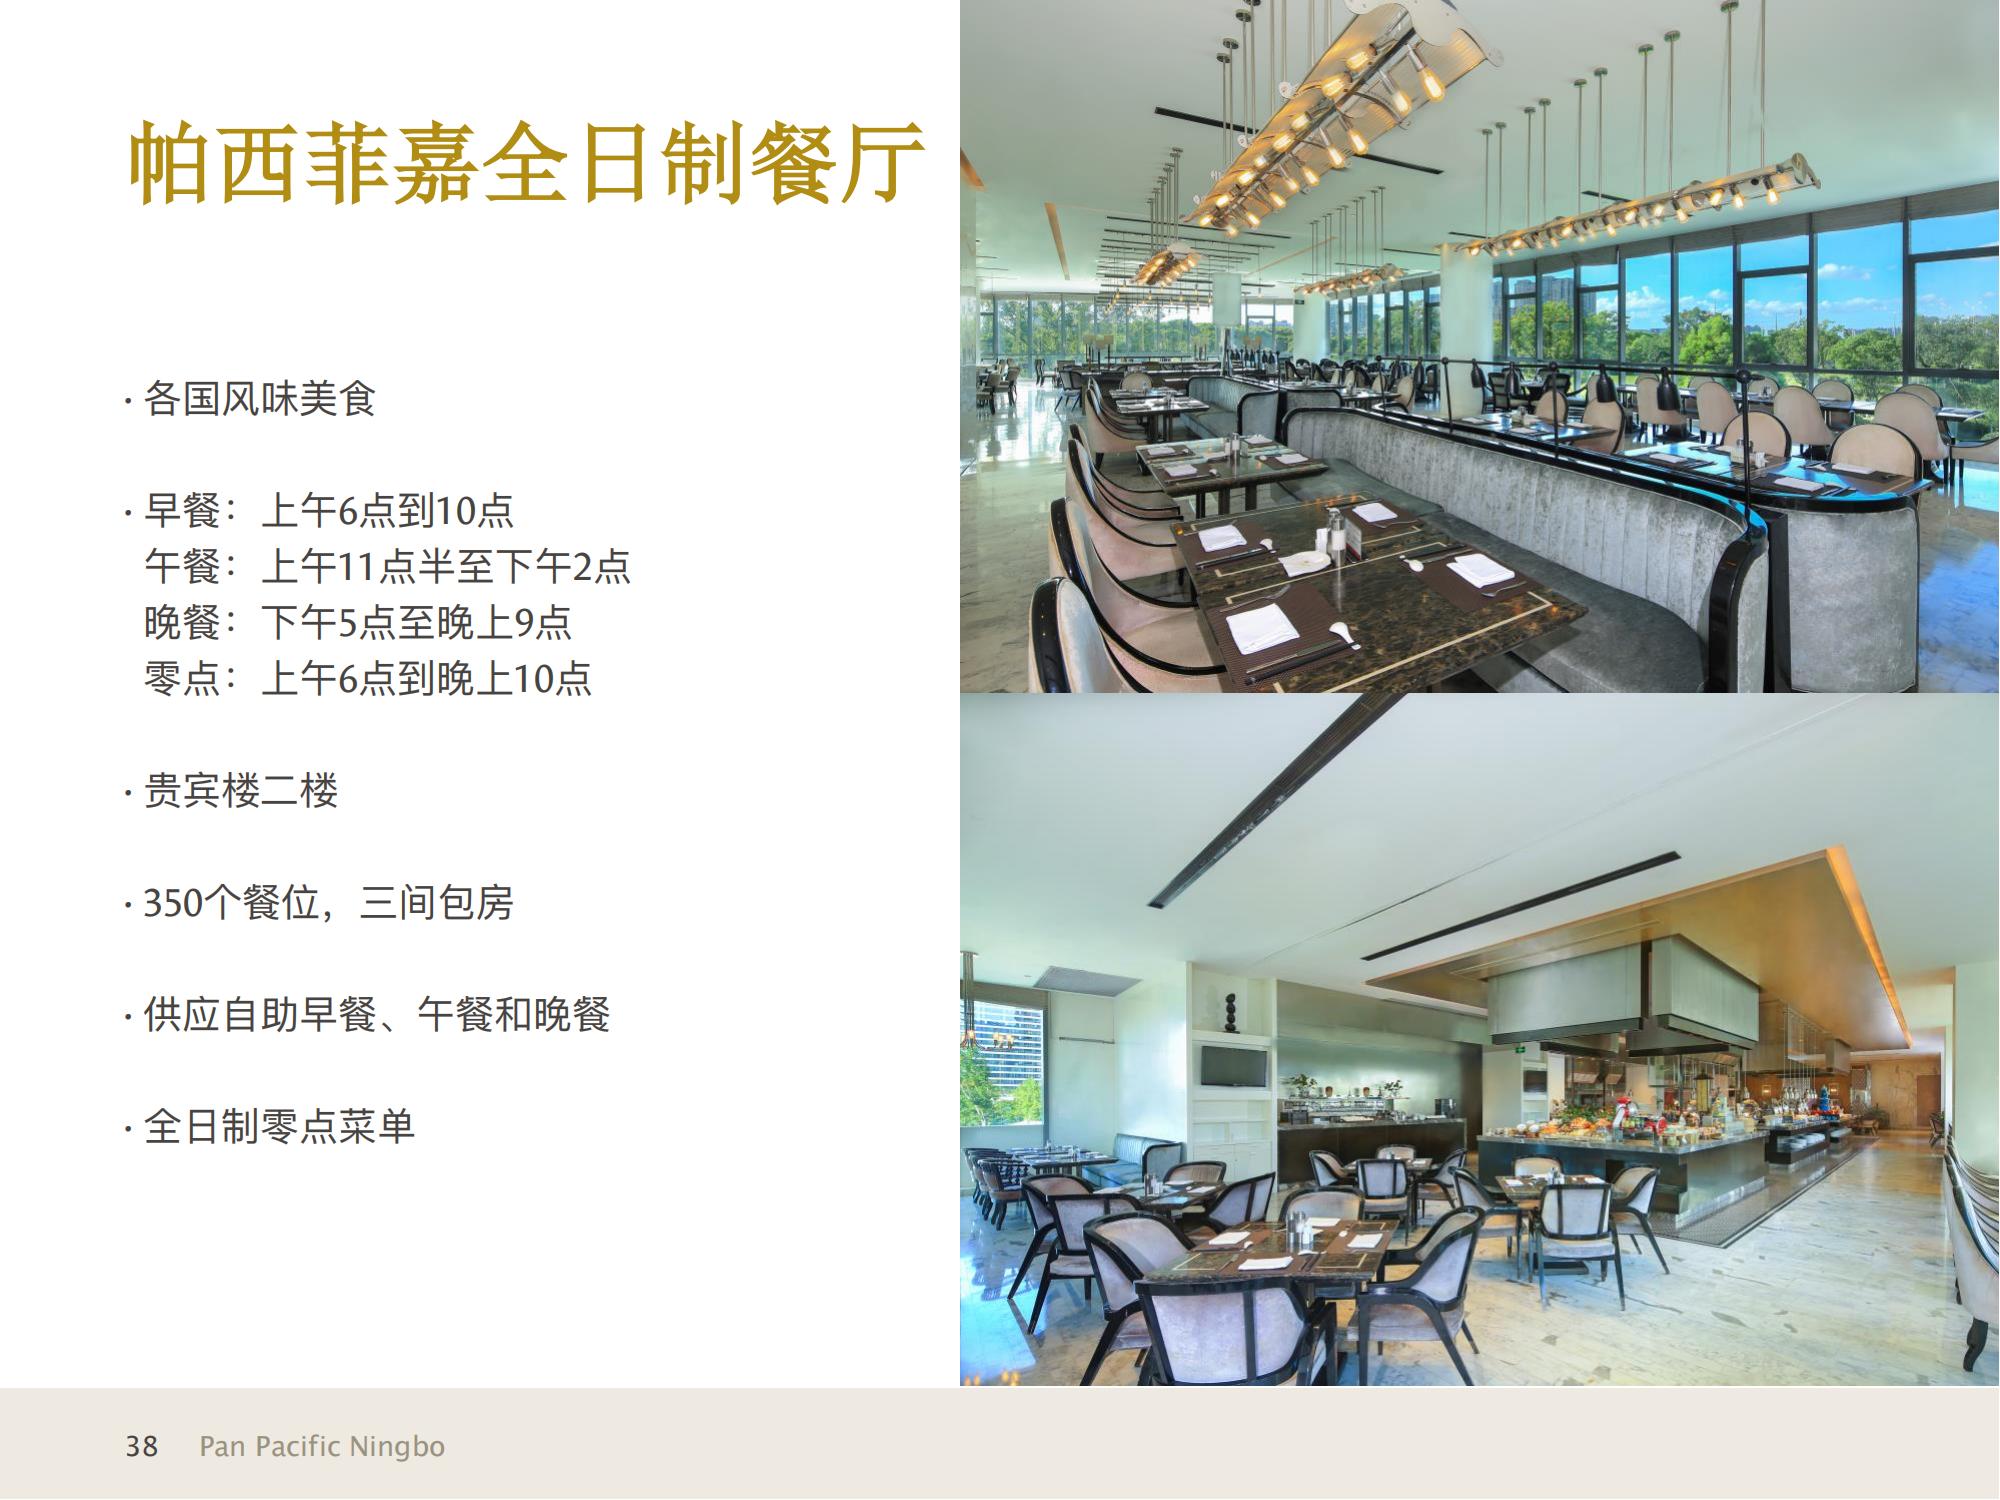 1_宁波泛太平洋大酒店与高级服务公寓信息展示+宁波热门景点20211223_07.jpg